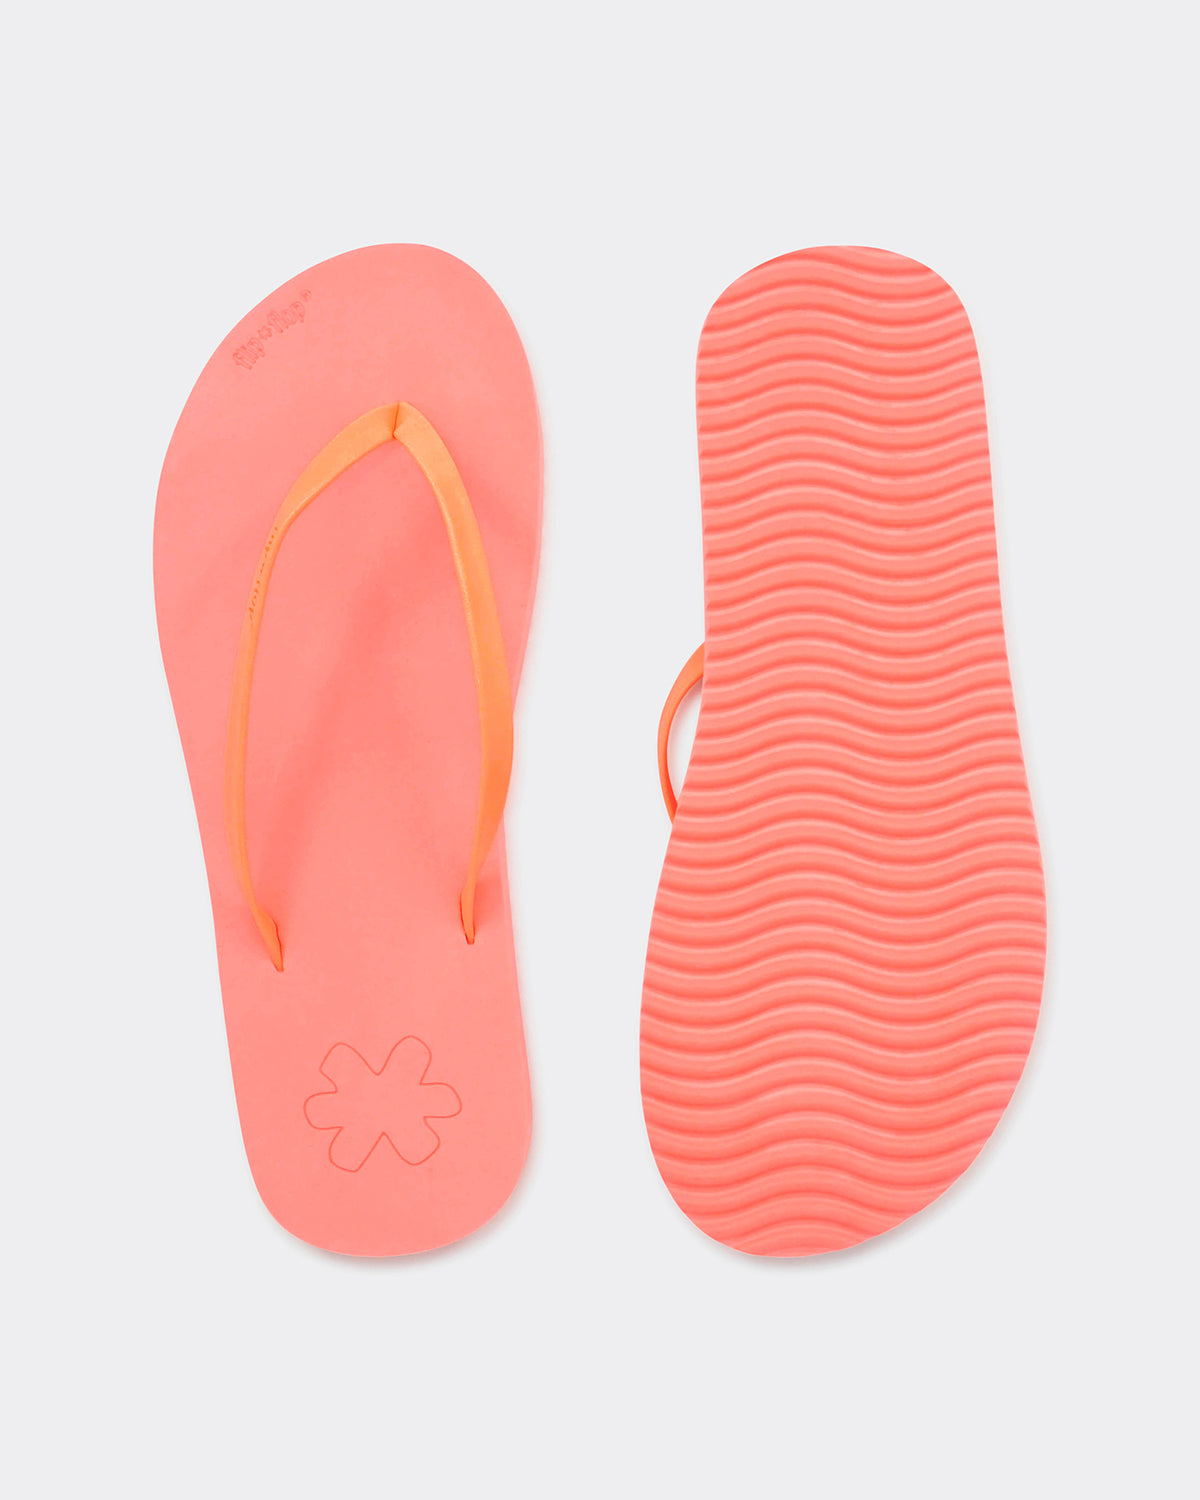 Flip Flop in color neon orange by Flip*Flop Original